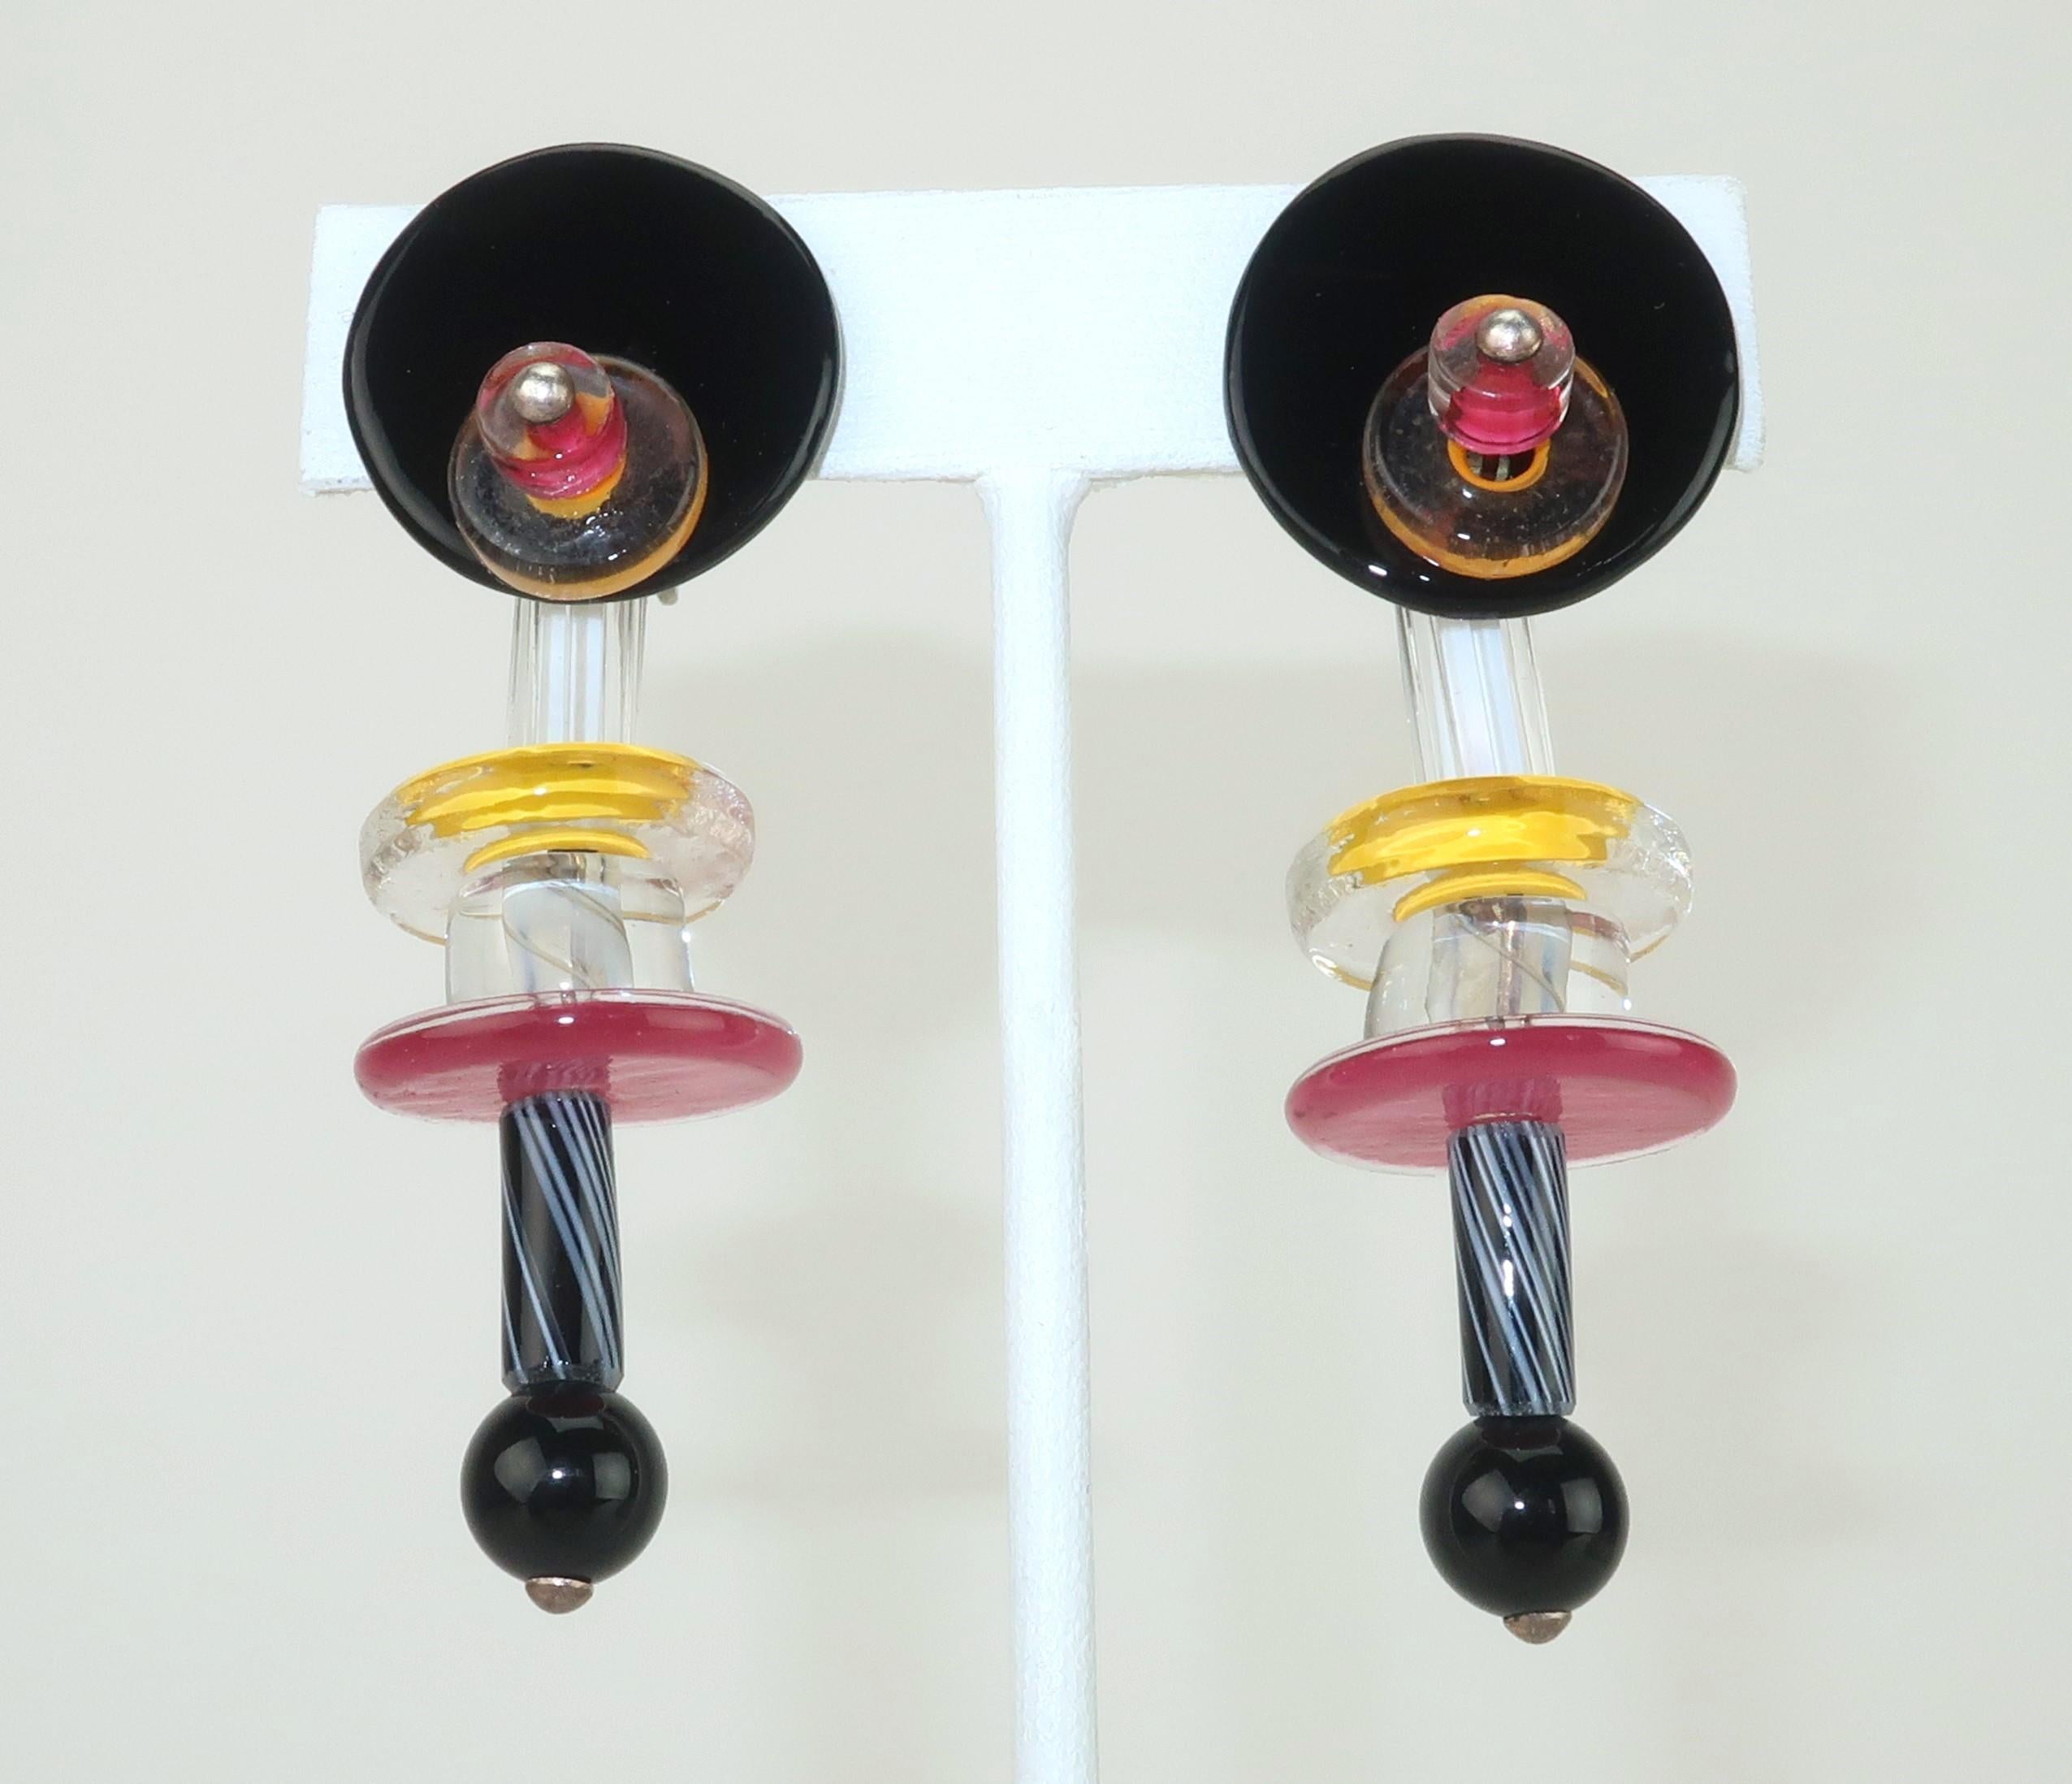 Modernistische Glasohrringe aus den 1960er Jahren mit kinetischer Bewegung und Clip-on-Beschlag.  Obwohl diese Ohrringe ein paar Jahrzehnte älter sind als der italienische Memphis Milano-Stil, erinnert der Look mit seiner Kombination aus